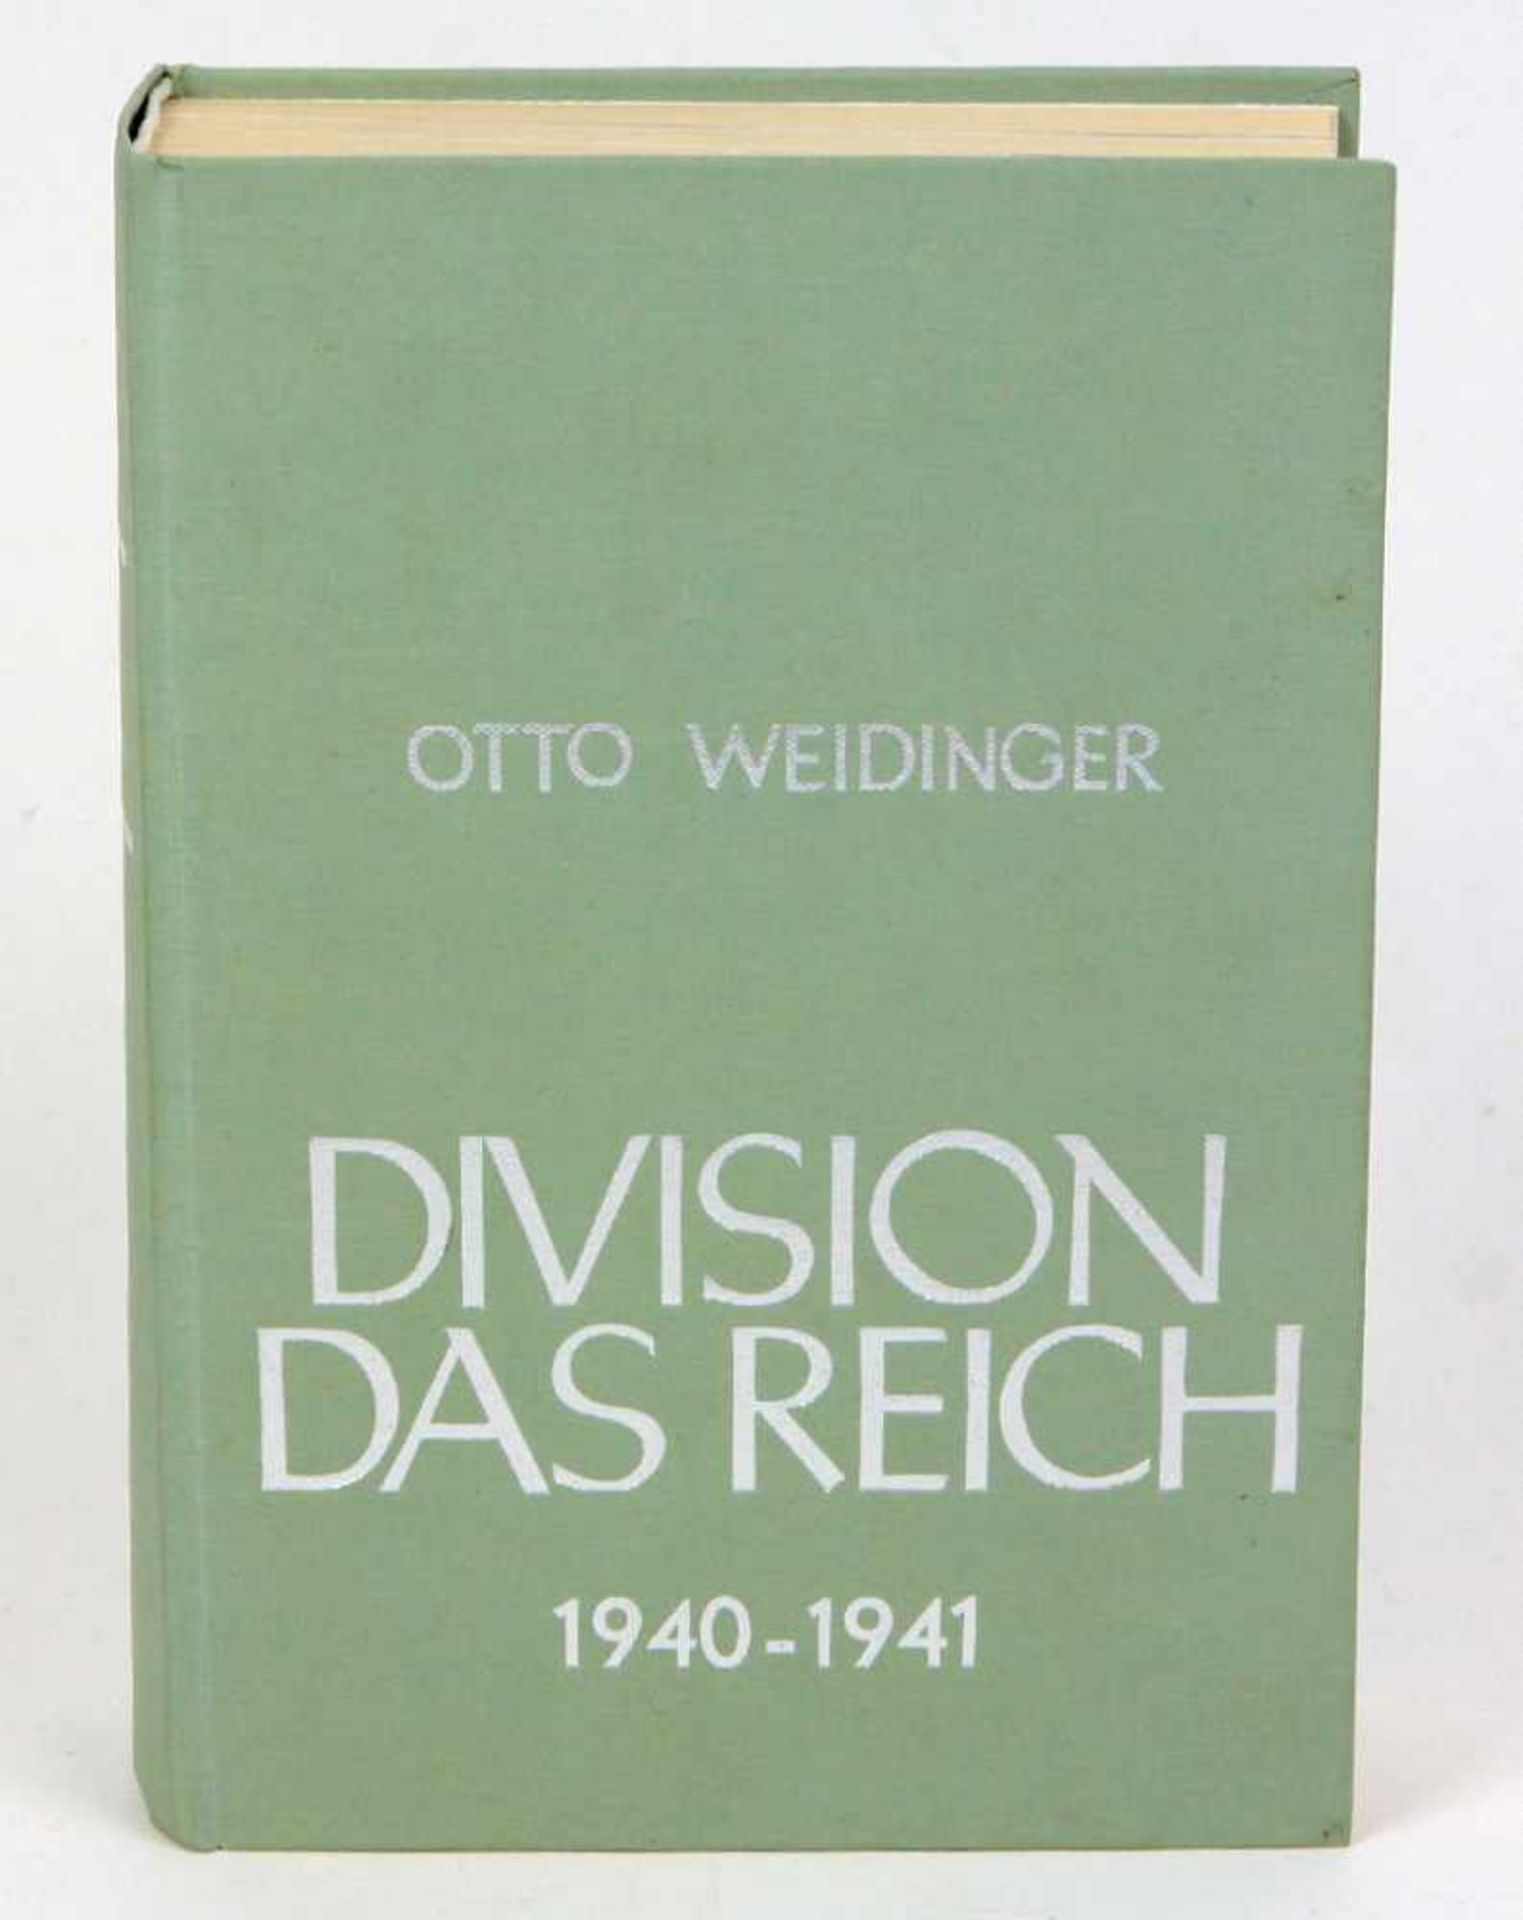 Division Das Reich, 2. Bd.Otto Weidinger, Division Das Reich, Bd. 2: 1940-1941, Der Weg der 2. SS-